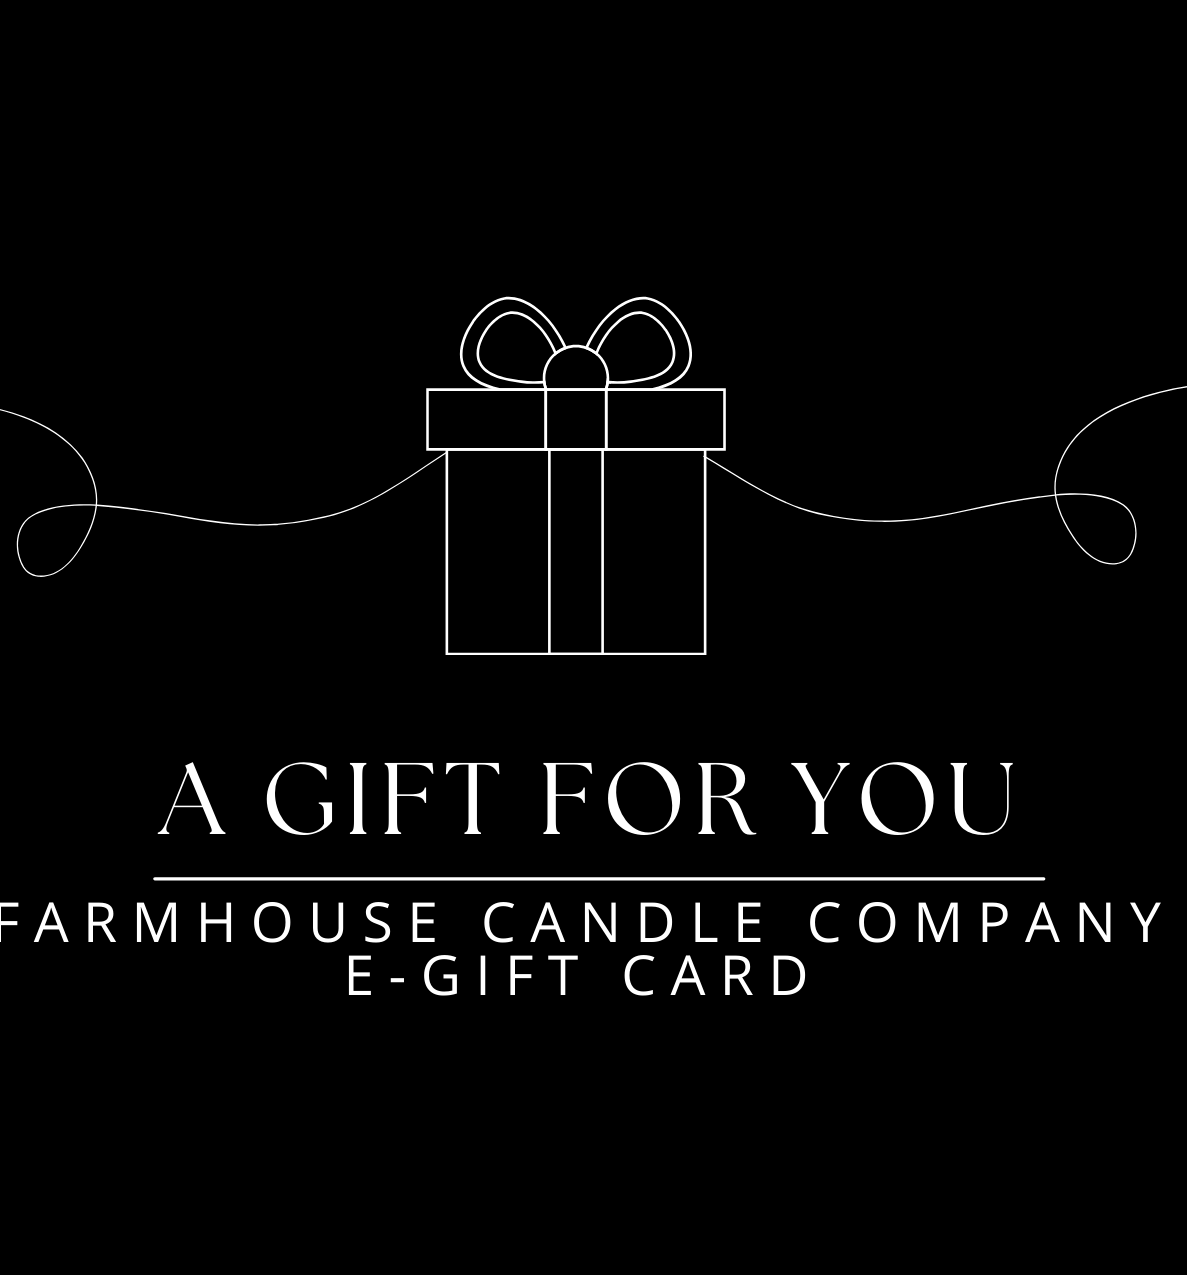 Gift Cards - Farmhouse Candle Company E-Gift Card